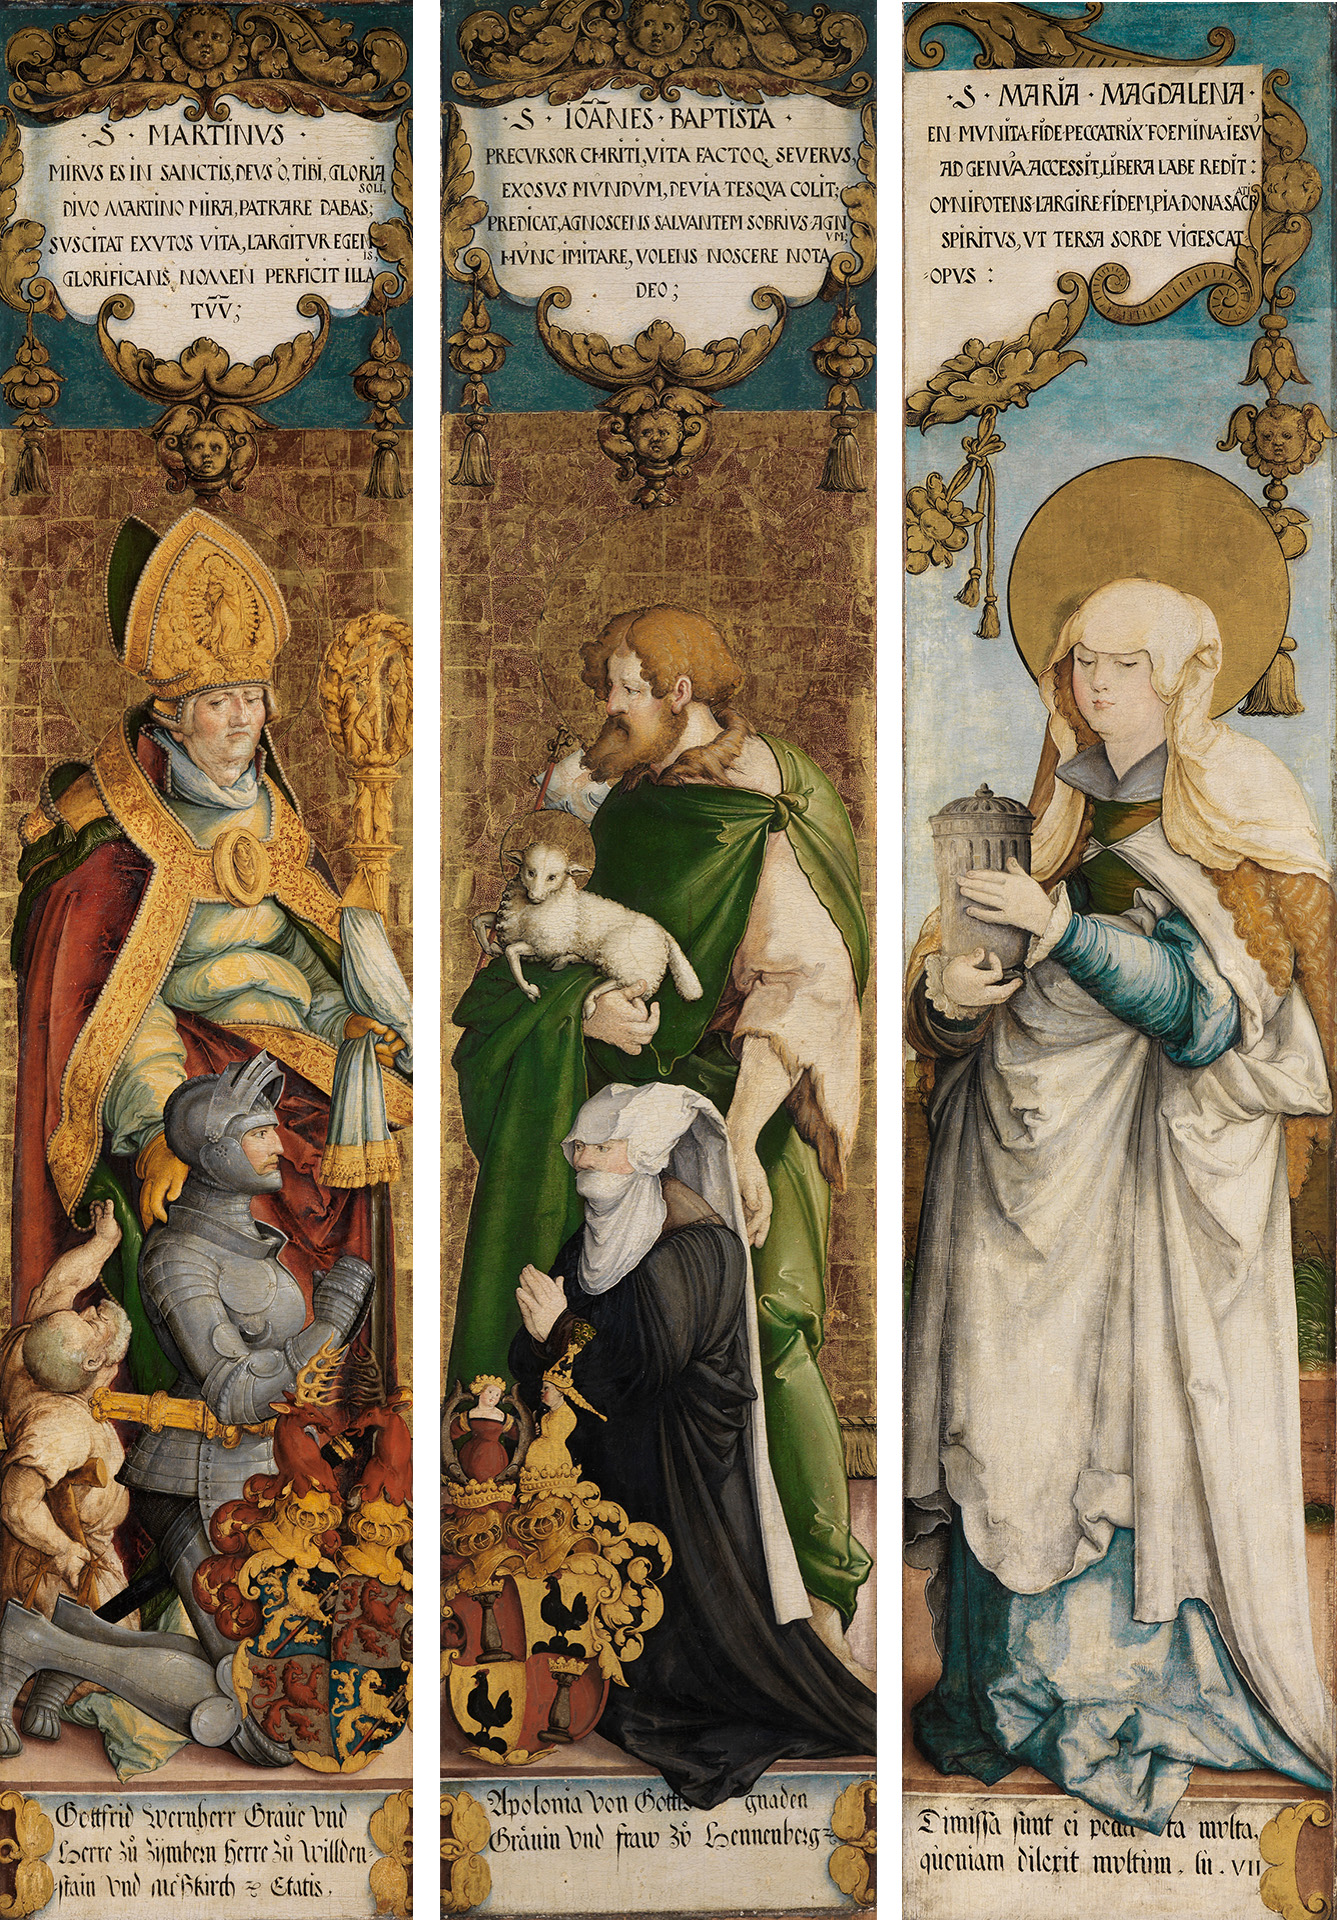 Abbildung der drei Innentafeln des Altars der Kirche St. Martin in Meßkirch, auf denen das Stifterpaar mit den Heiligen St. Martin und einem Bettler sowie Johannes dem Täufer zu sehen ist sowie die abgespaltene Rückseite des Altarbildes, die Maria Magdalena zeigt.